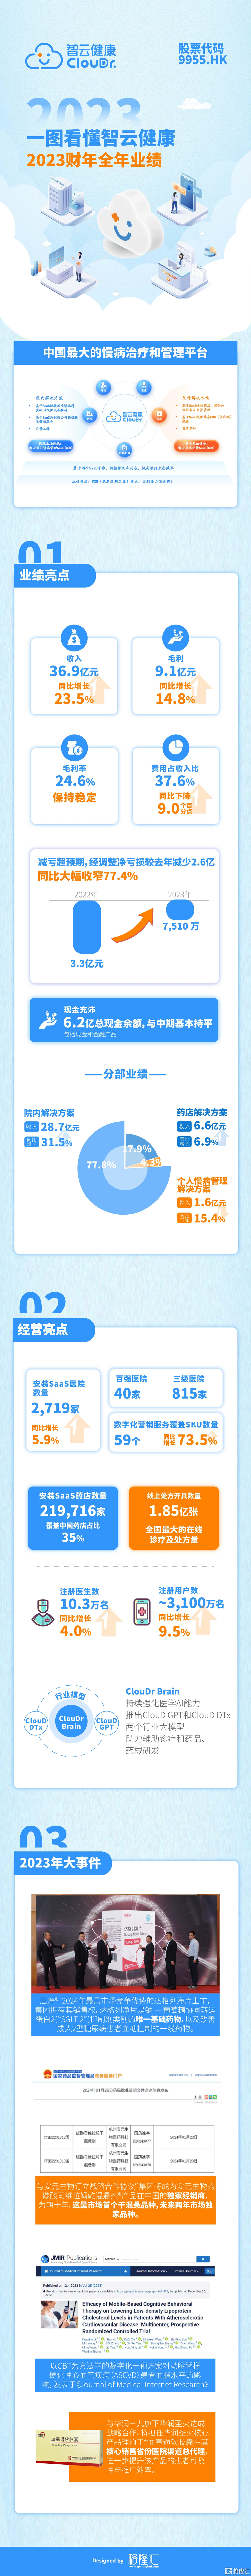 一图看懂智云健康(09955.HK)2023全年业绩